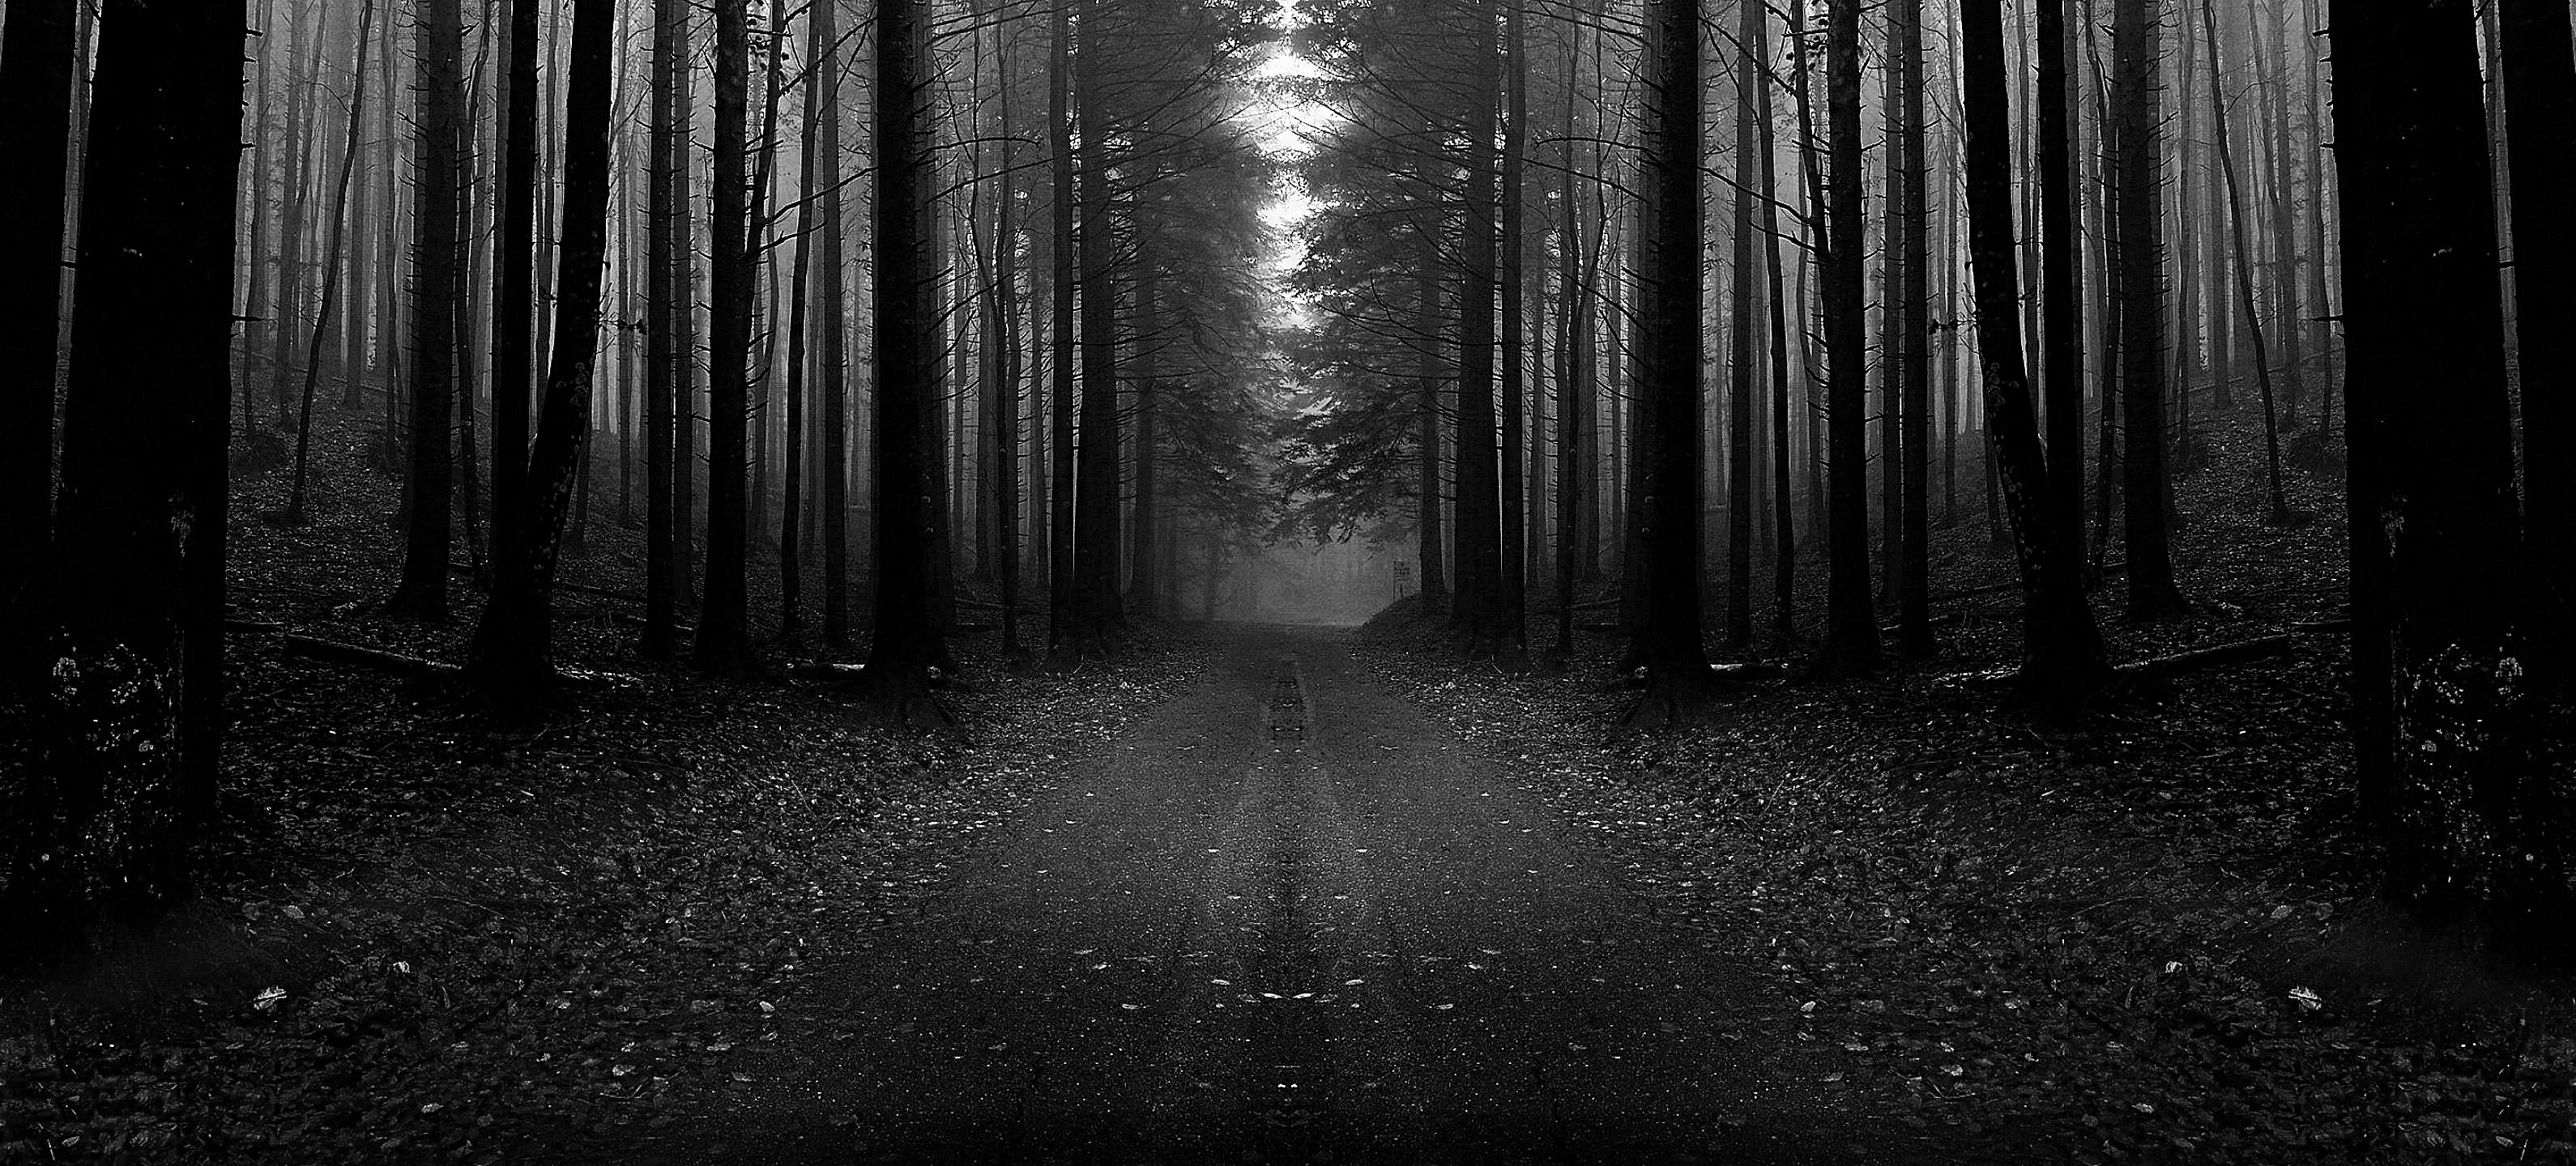 365-noche-en-el-bosque.jpg